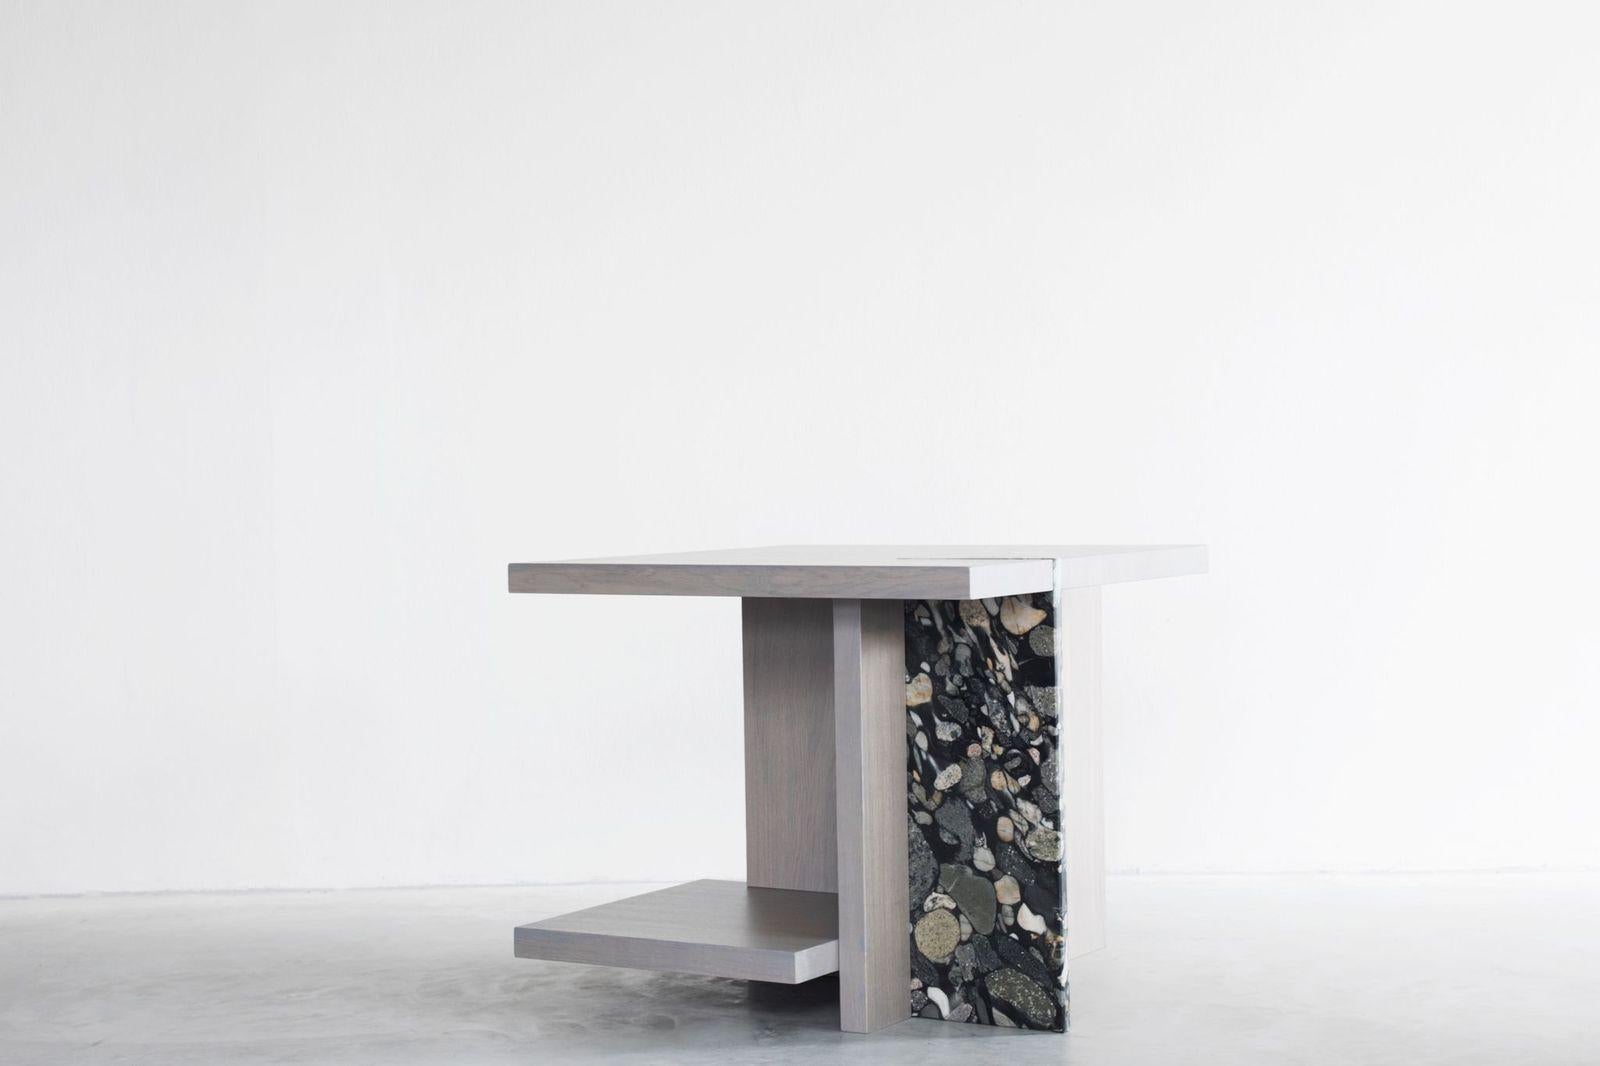 Table d'appoint Stijl de Van Rossum
Dimensions : D70 x W70 x H60 cm
MATERIAL : Chêne, marbre.

Le bois est disponible dans toutes les couleurs standard de Van Rossum, ou dans une finition assortie à l'échantillon du client.
Les détails sont